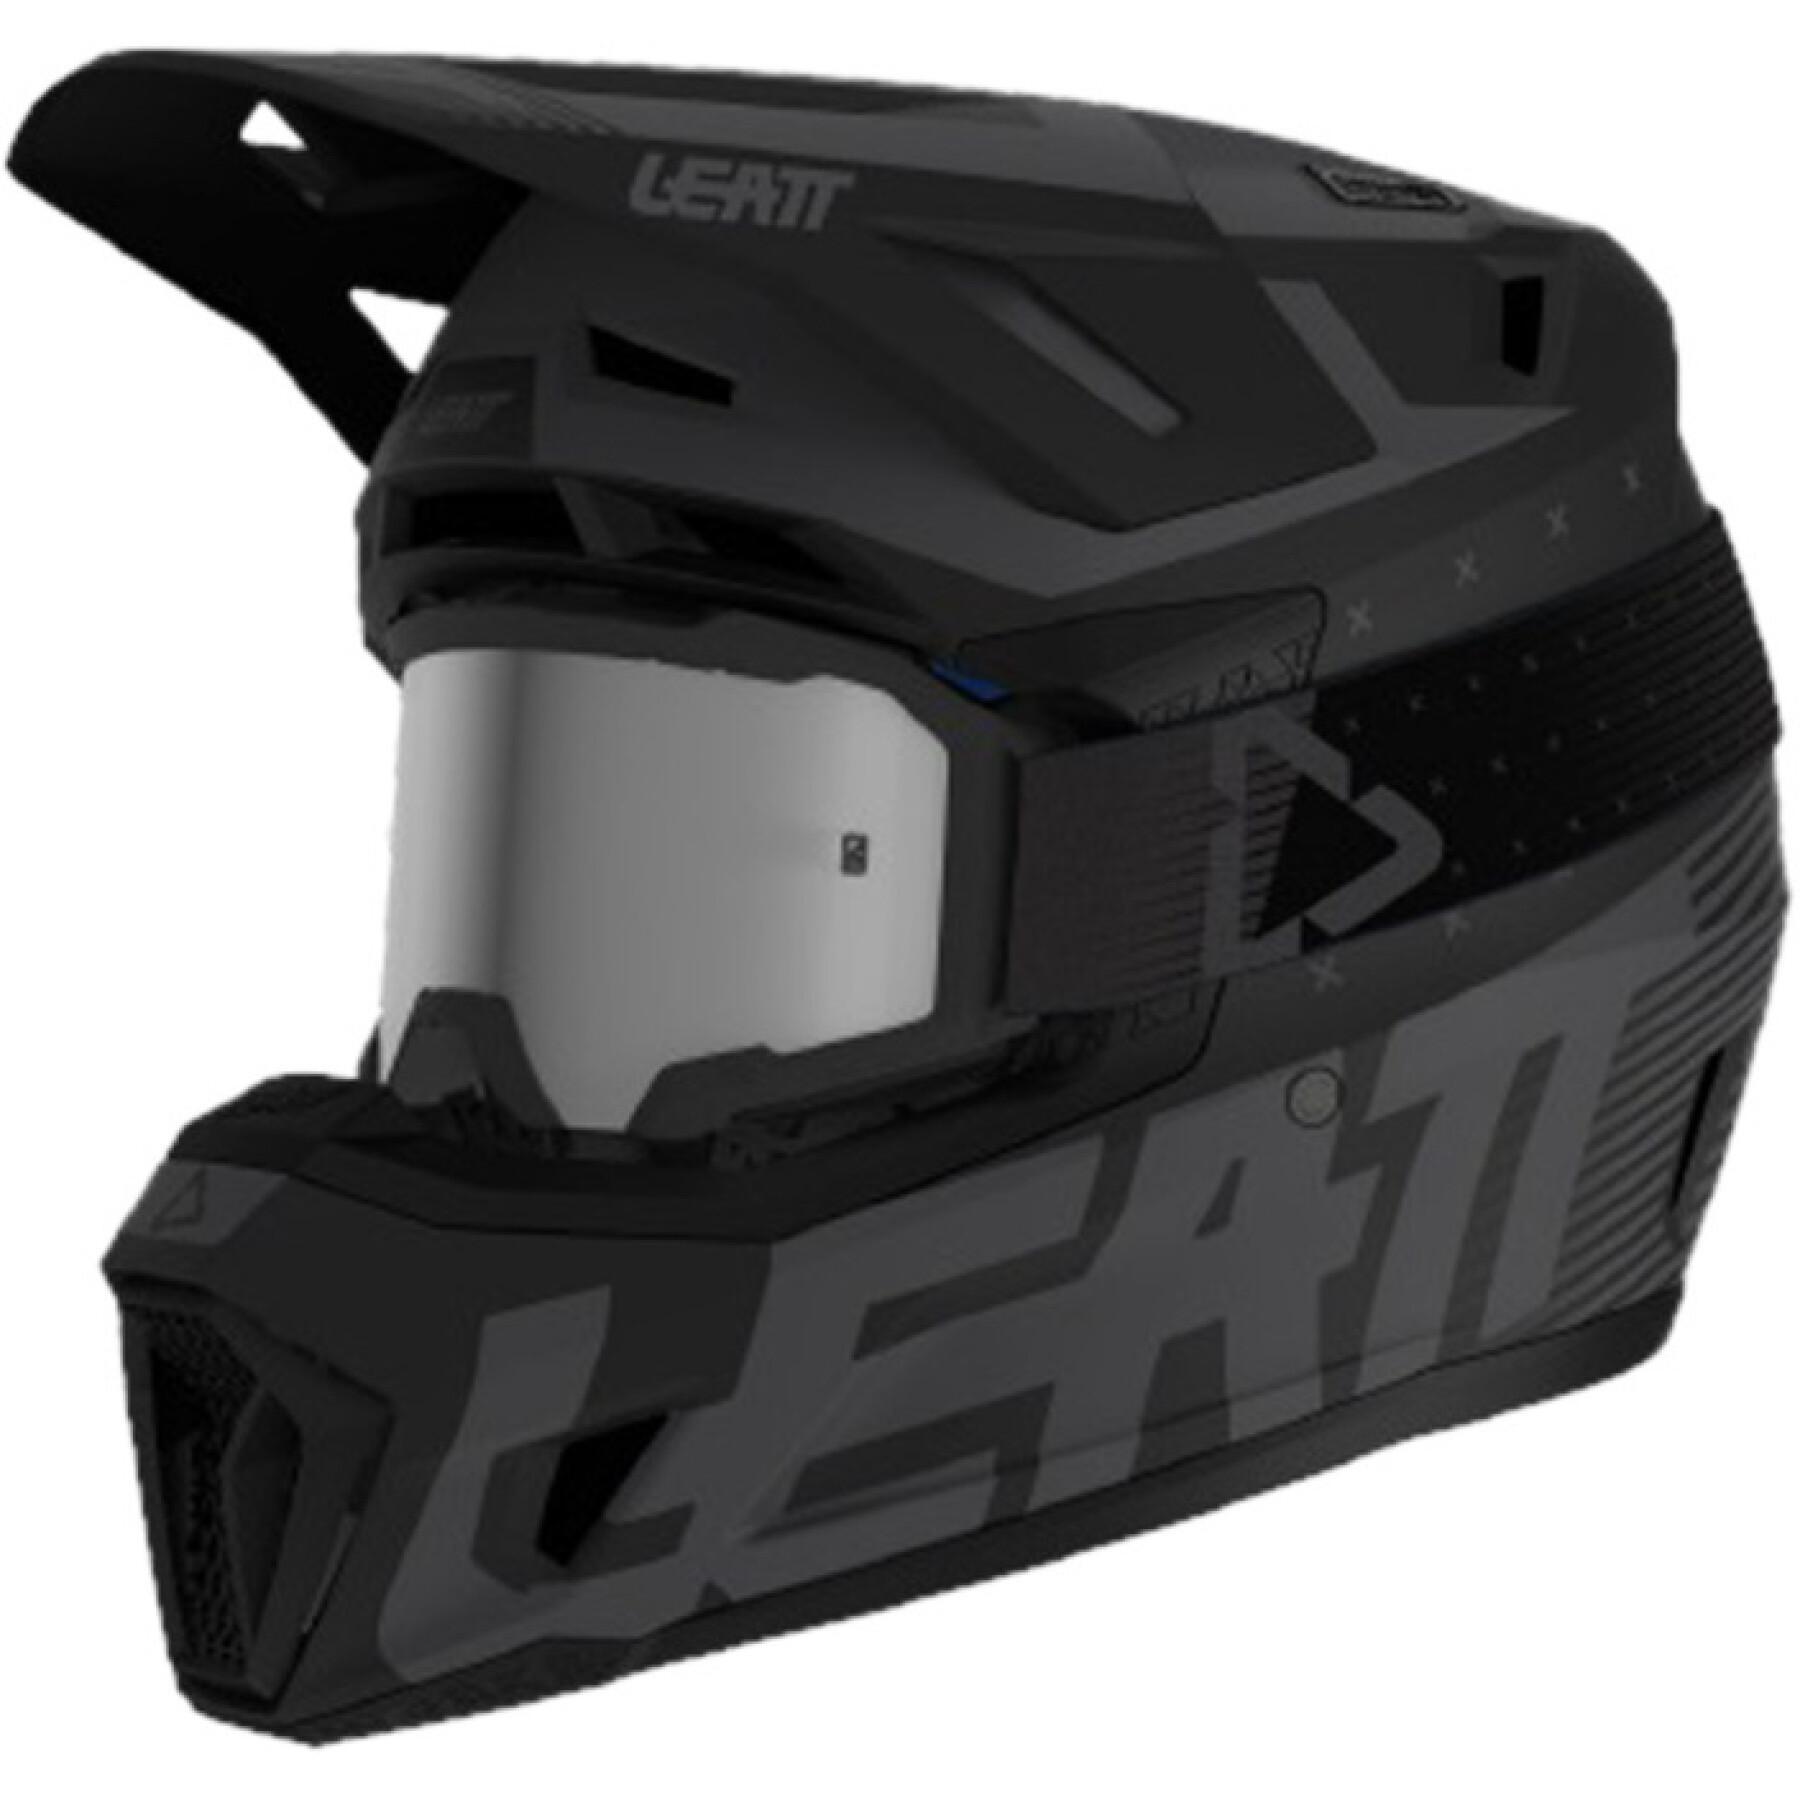 Kit casco da motocross Leatt 7.5 V24